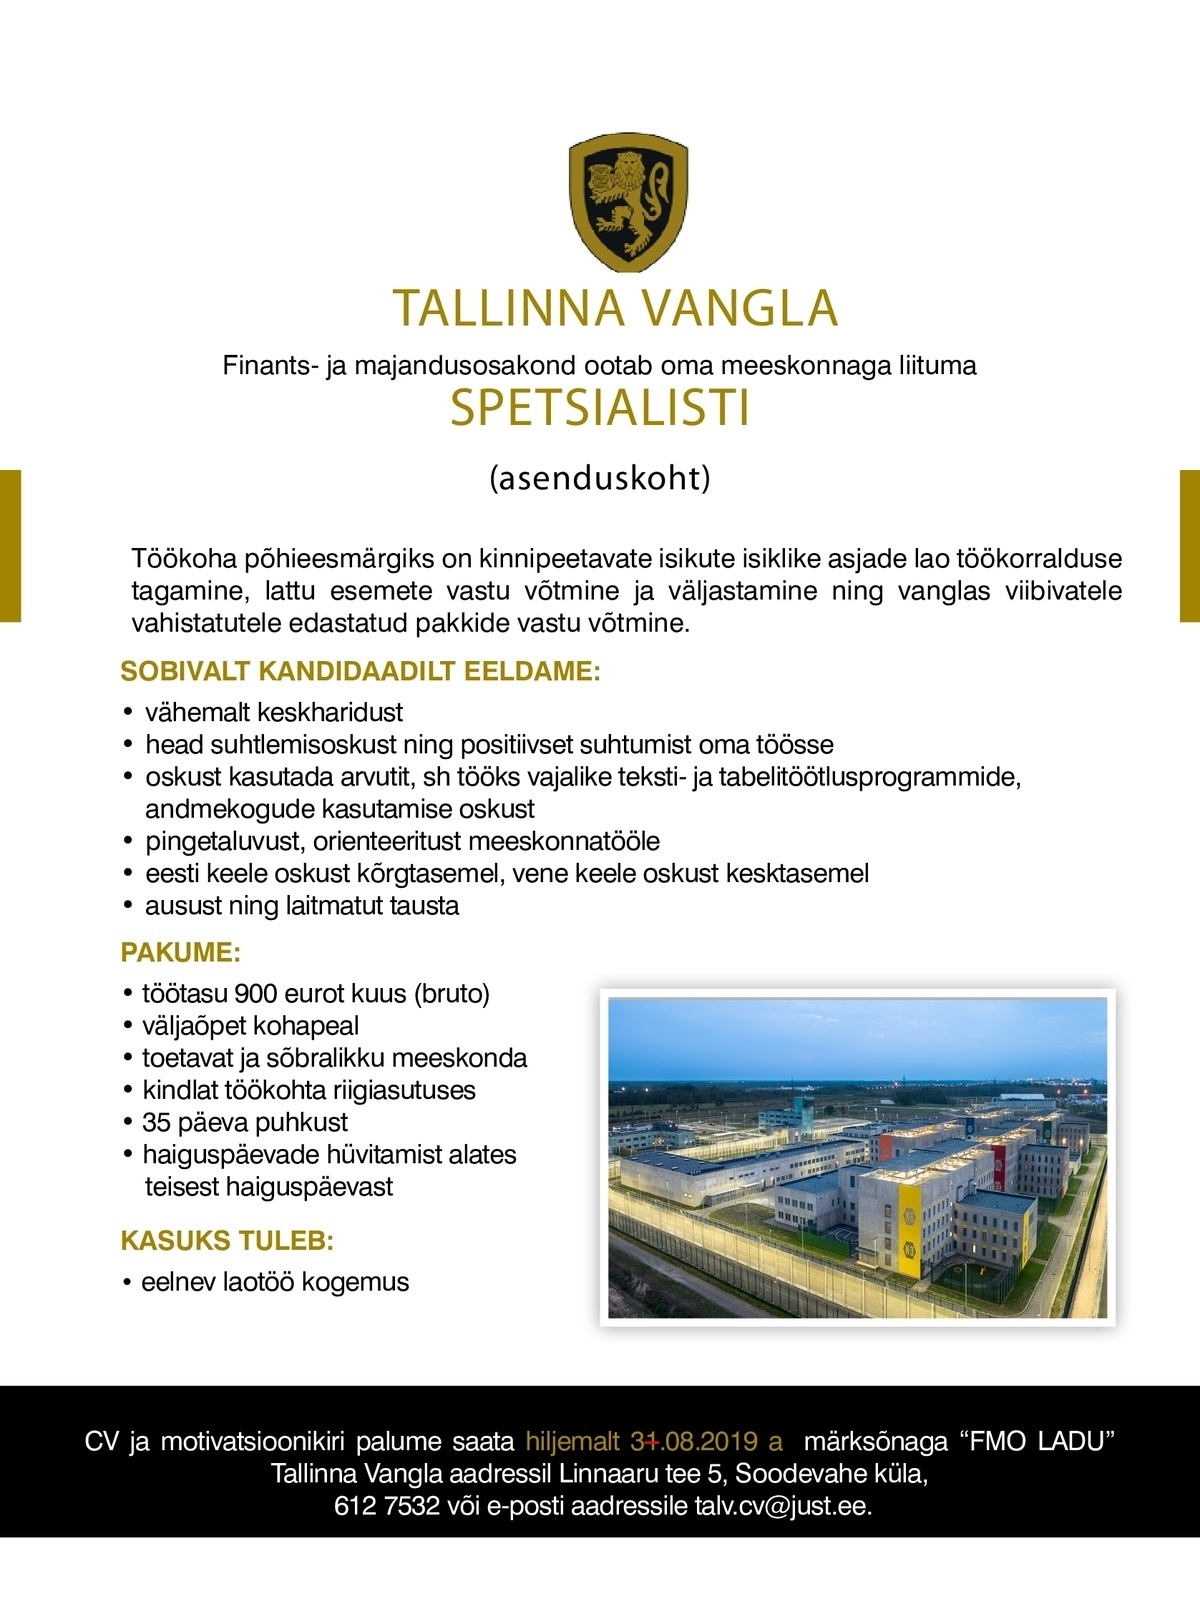 Tallinna Vangla Finants- ja majandusosakonna spetsialist (asenduskoht)